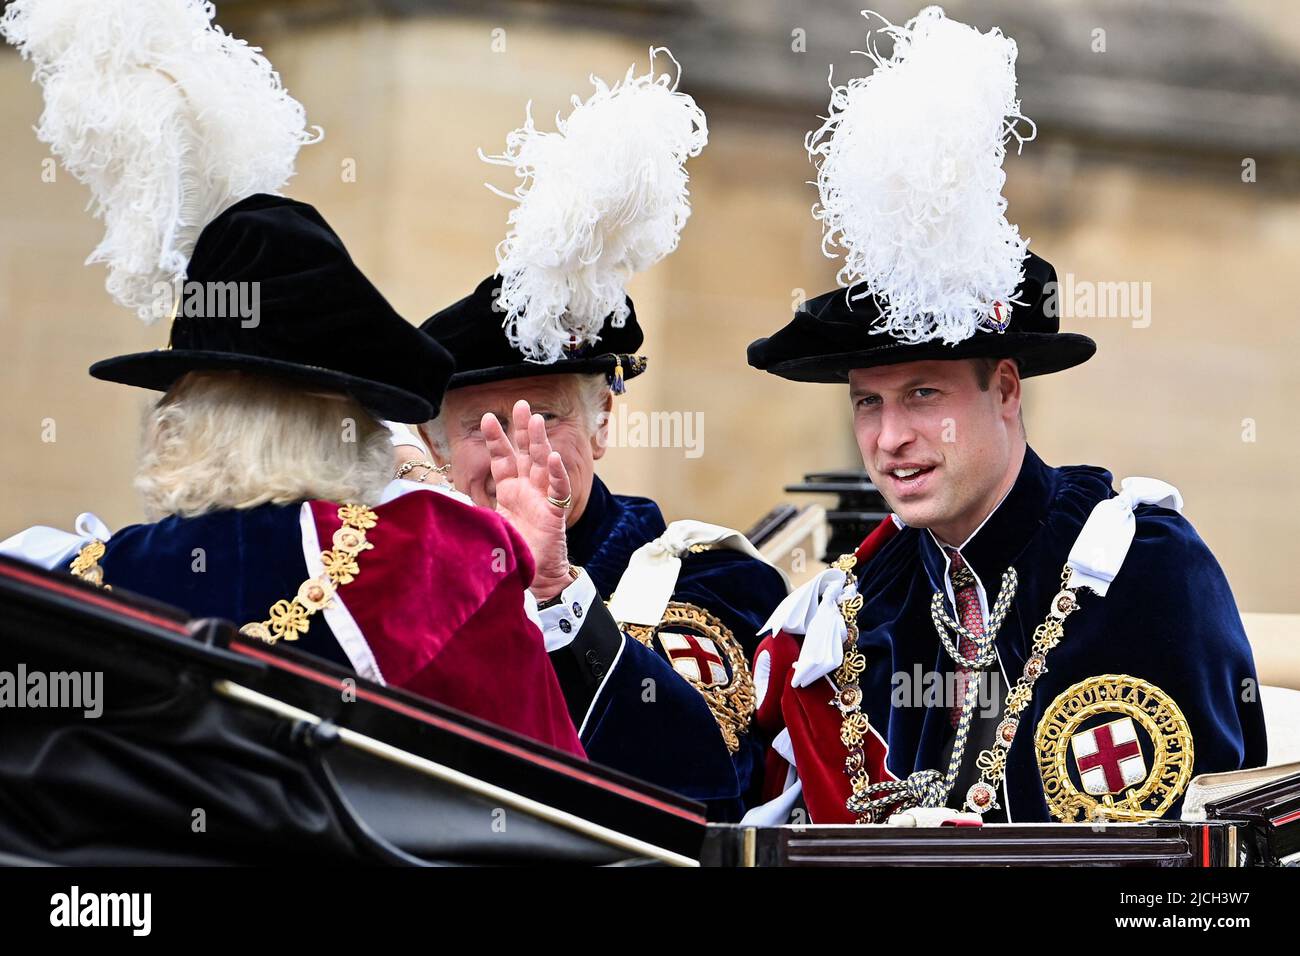 La duquesa de Cornualles, el Príncipe de Gales y el Duque de Cambridge salen en un carruaje para su viaje de regreso al Castillo siguiendo la Orden del Servicio de la Garter en la Capilla de San Jorge, Castillo de Windsor. Fecha de la foto: Lunes 13 de junio de 2022. Foto de stock